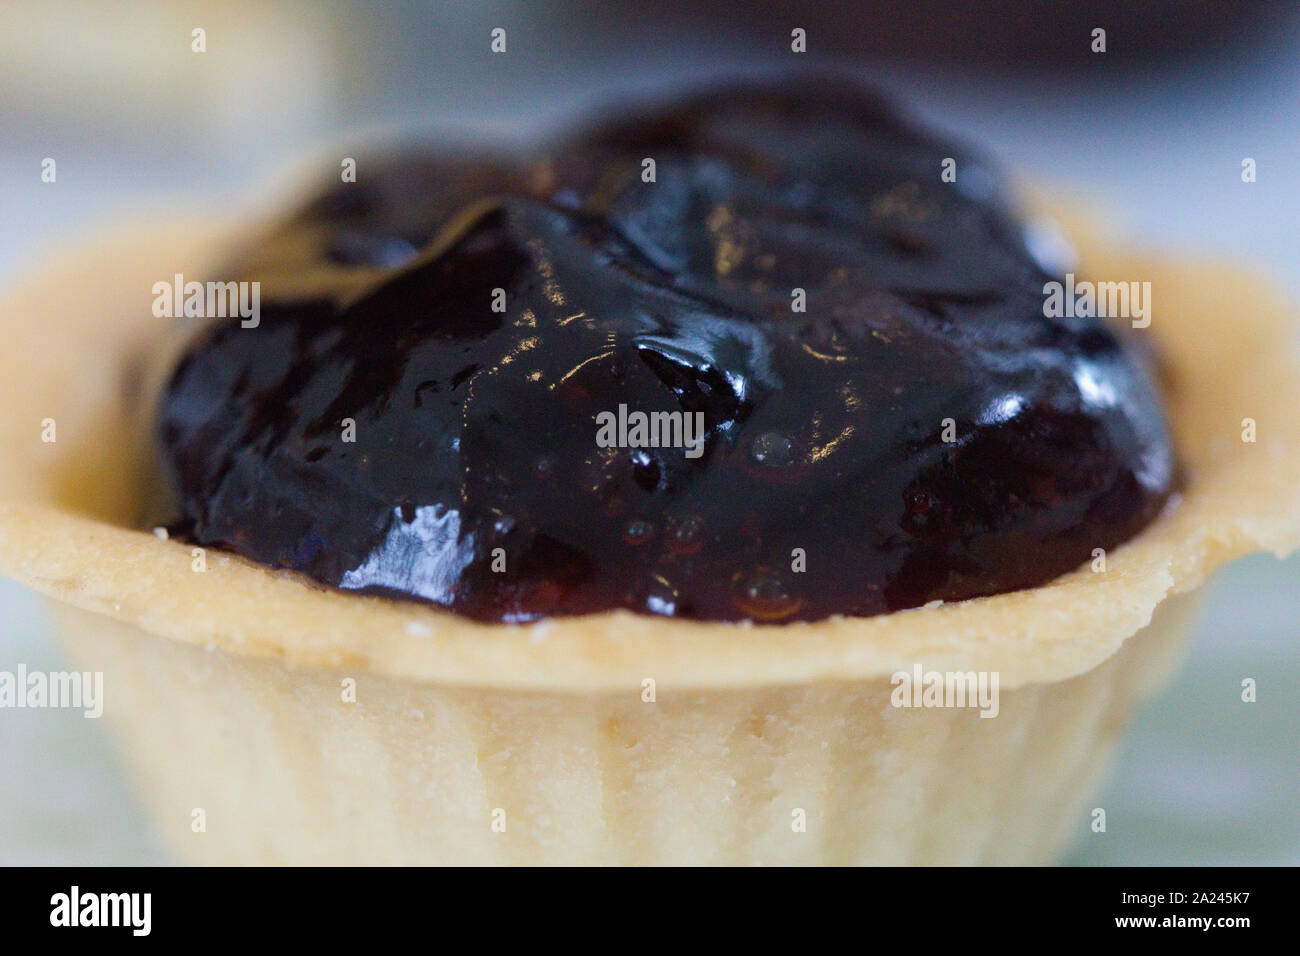 blueberry tart cupcakes for tea Stock Photo